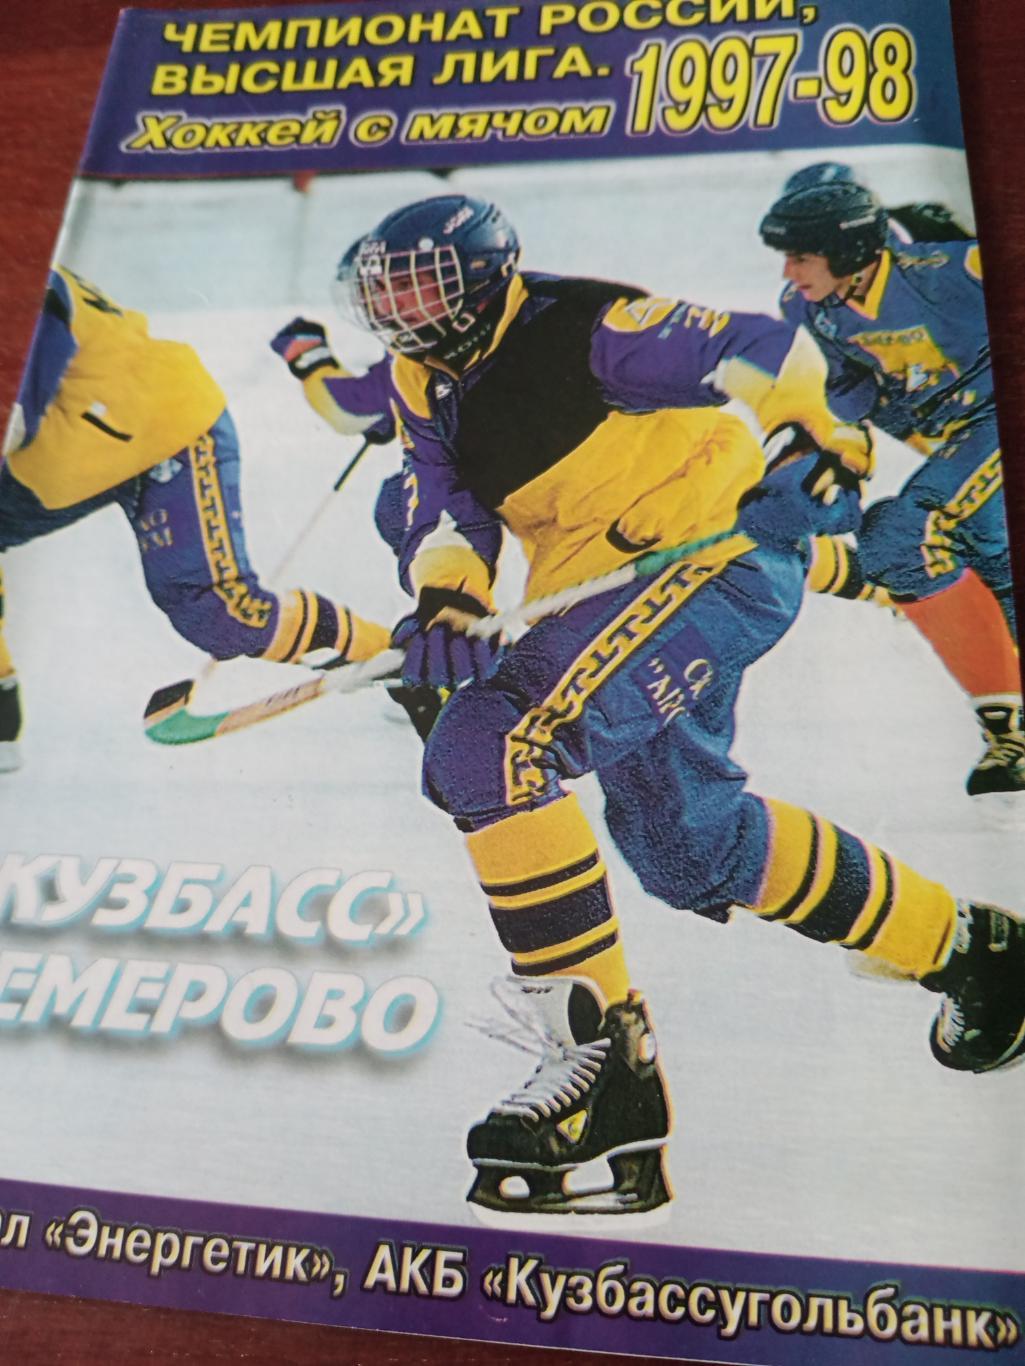 Хоккей с мячом. Кемерово - 1997/98